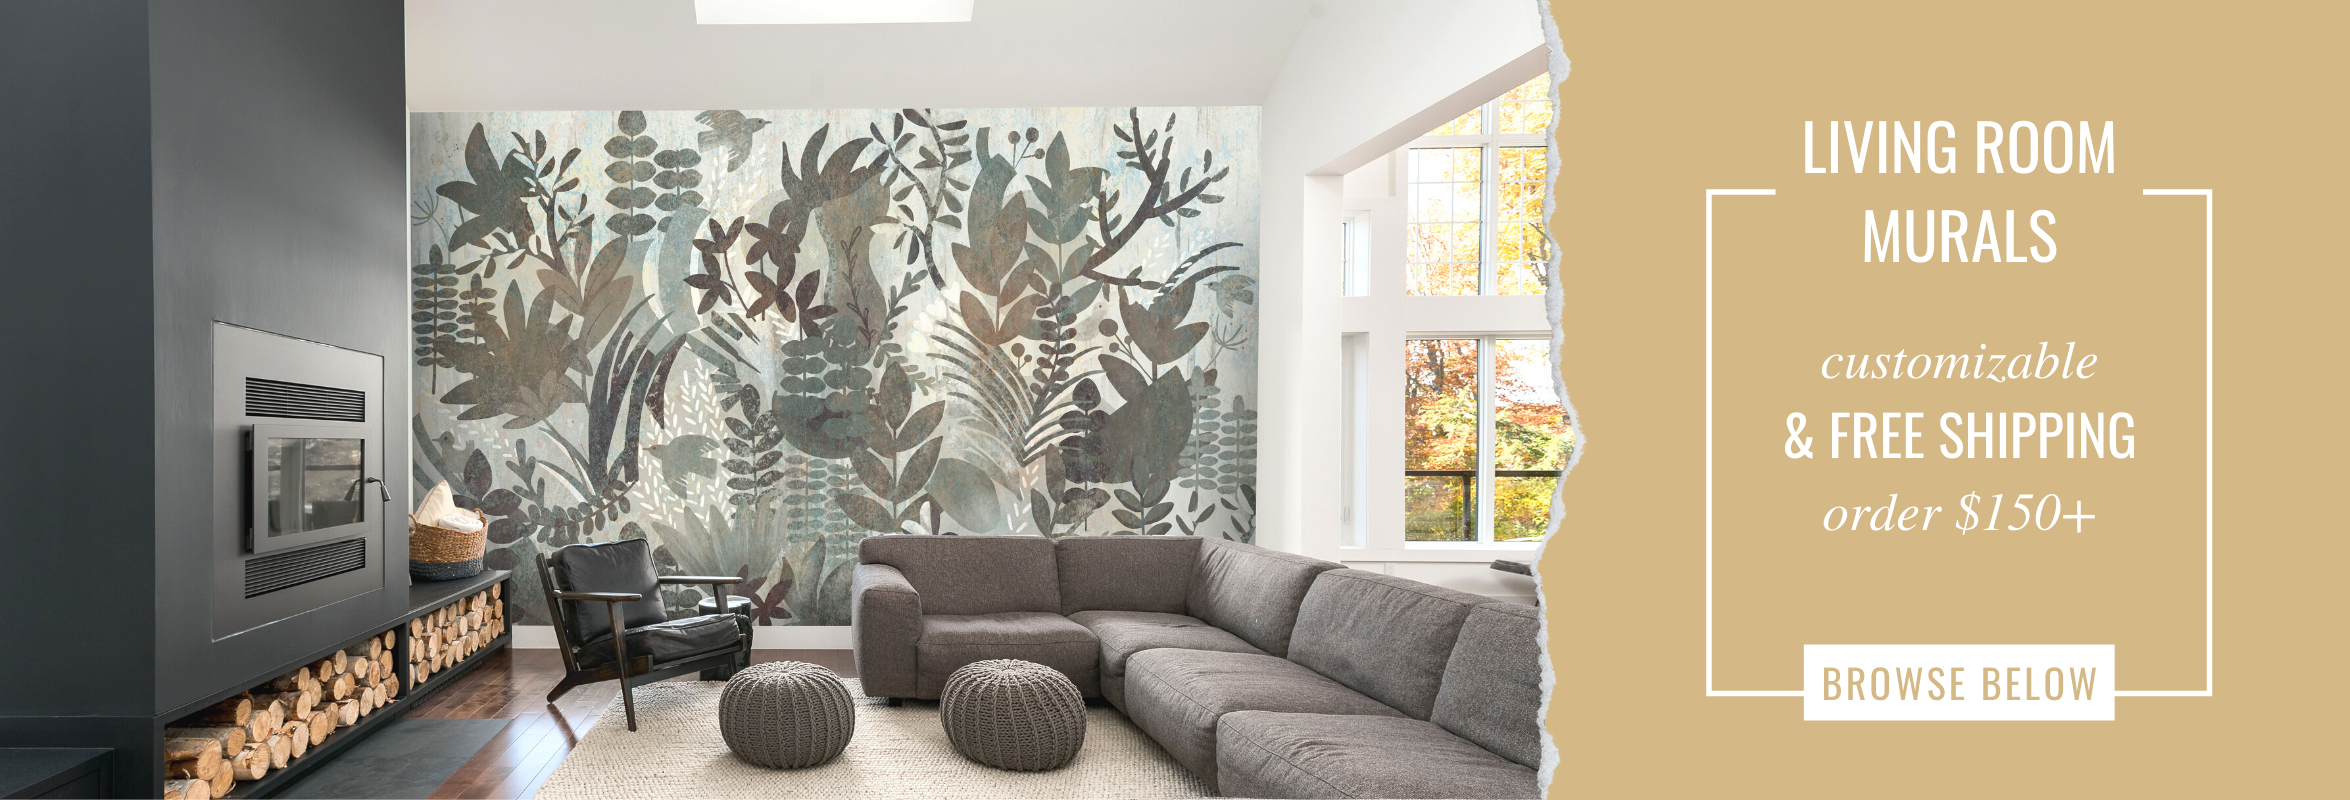 living room murals